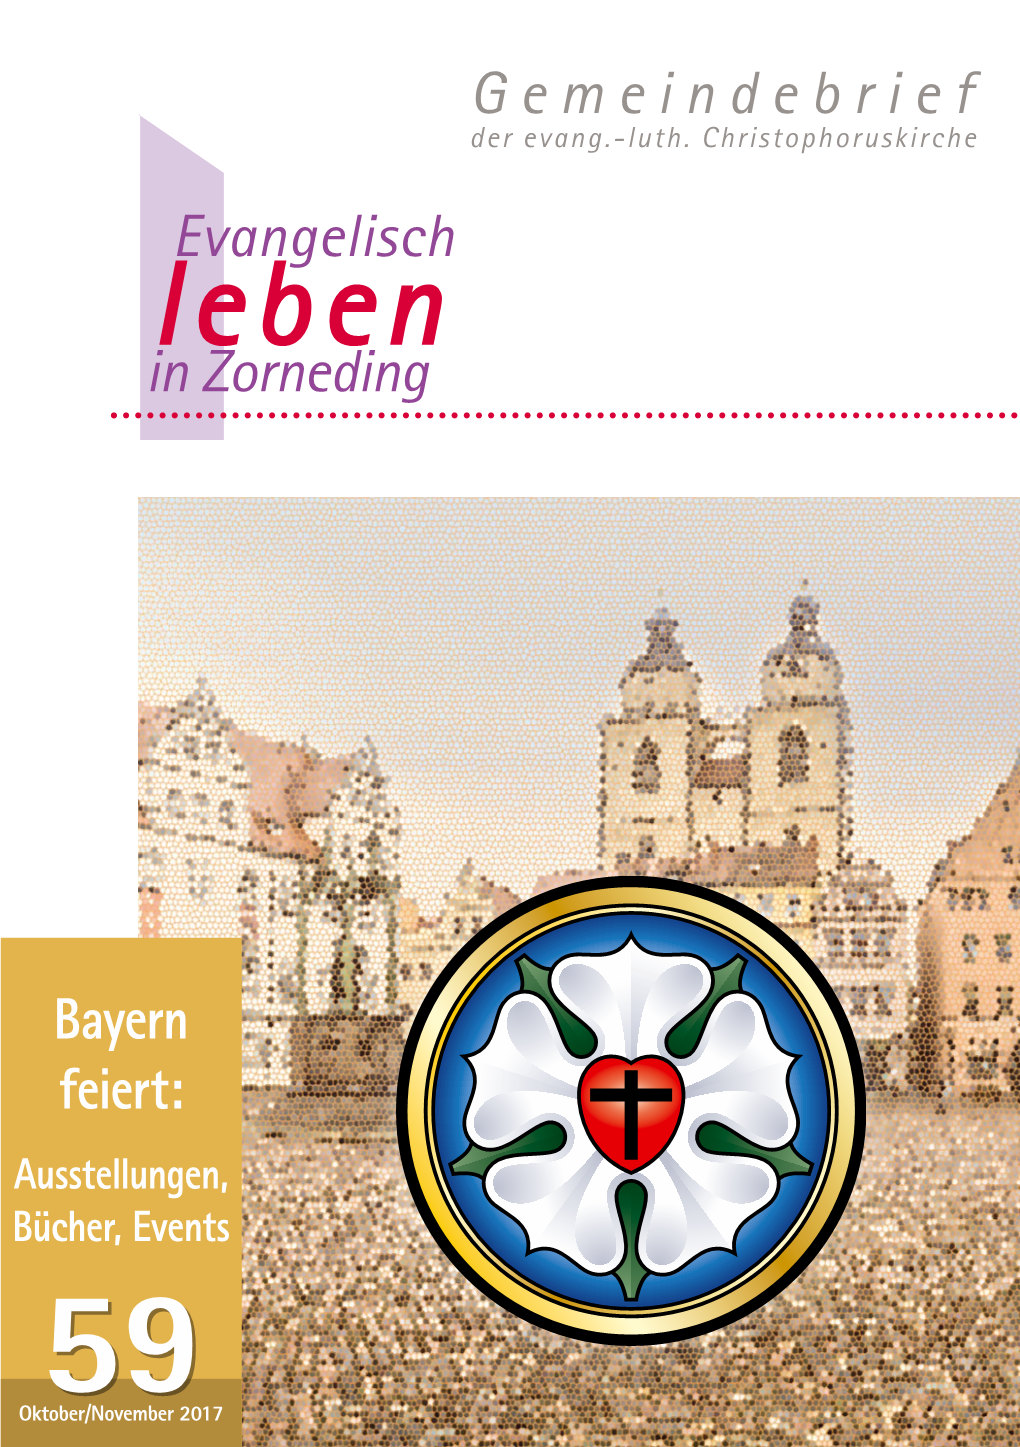 Gemeindebrief Evangelisch in Zorneding Bayern Feiert